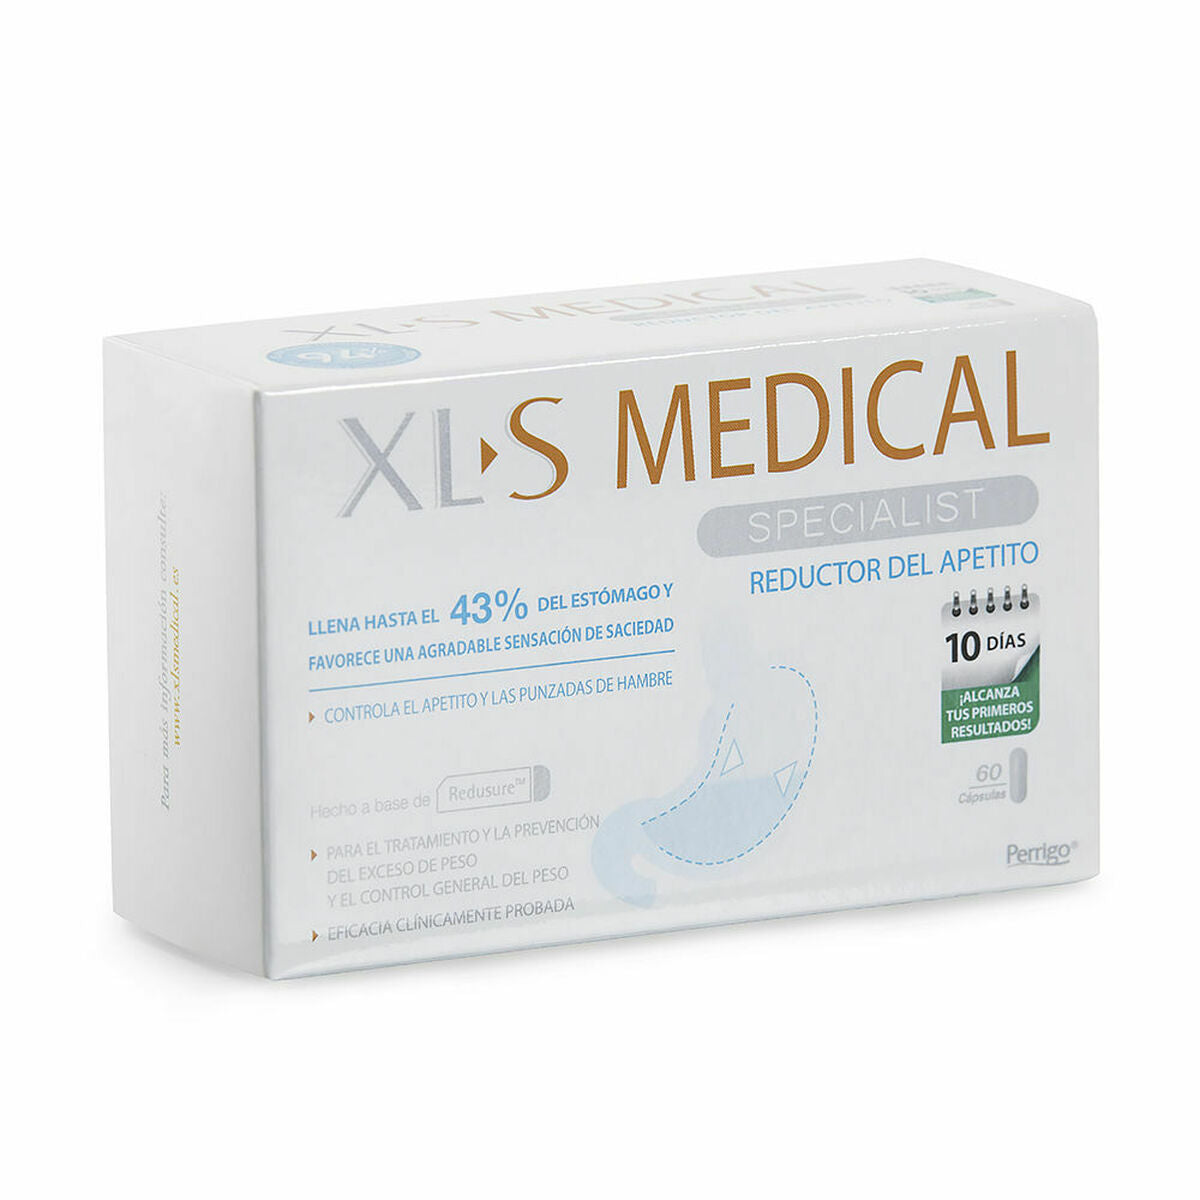 Digestive supplement XLS Medical   60 Units